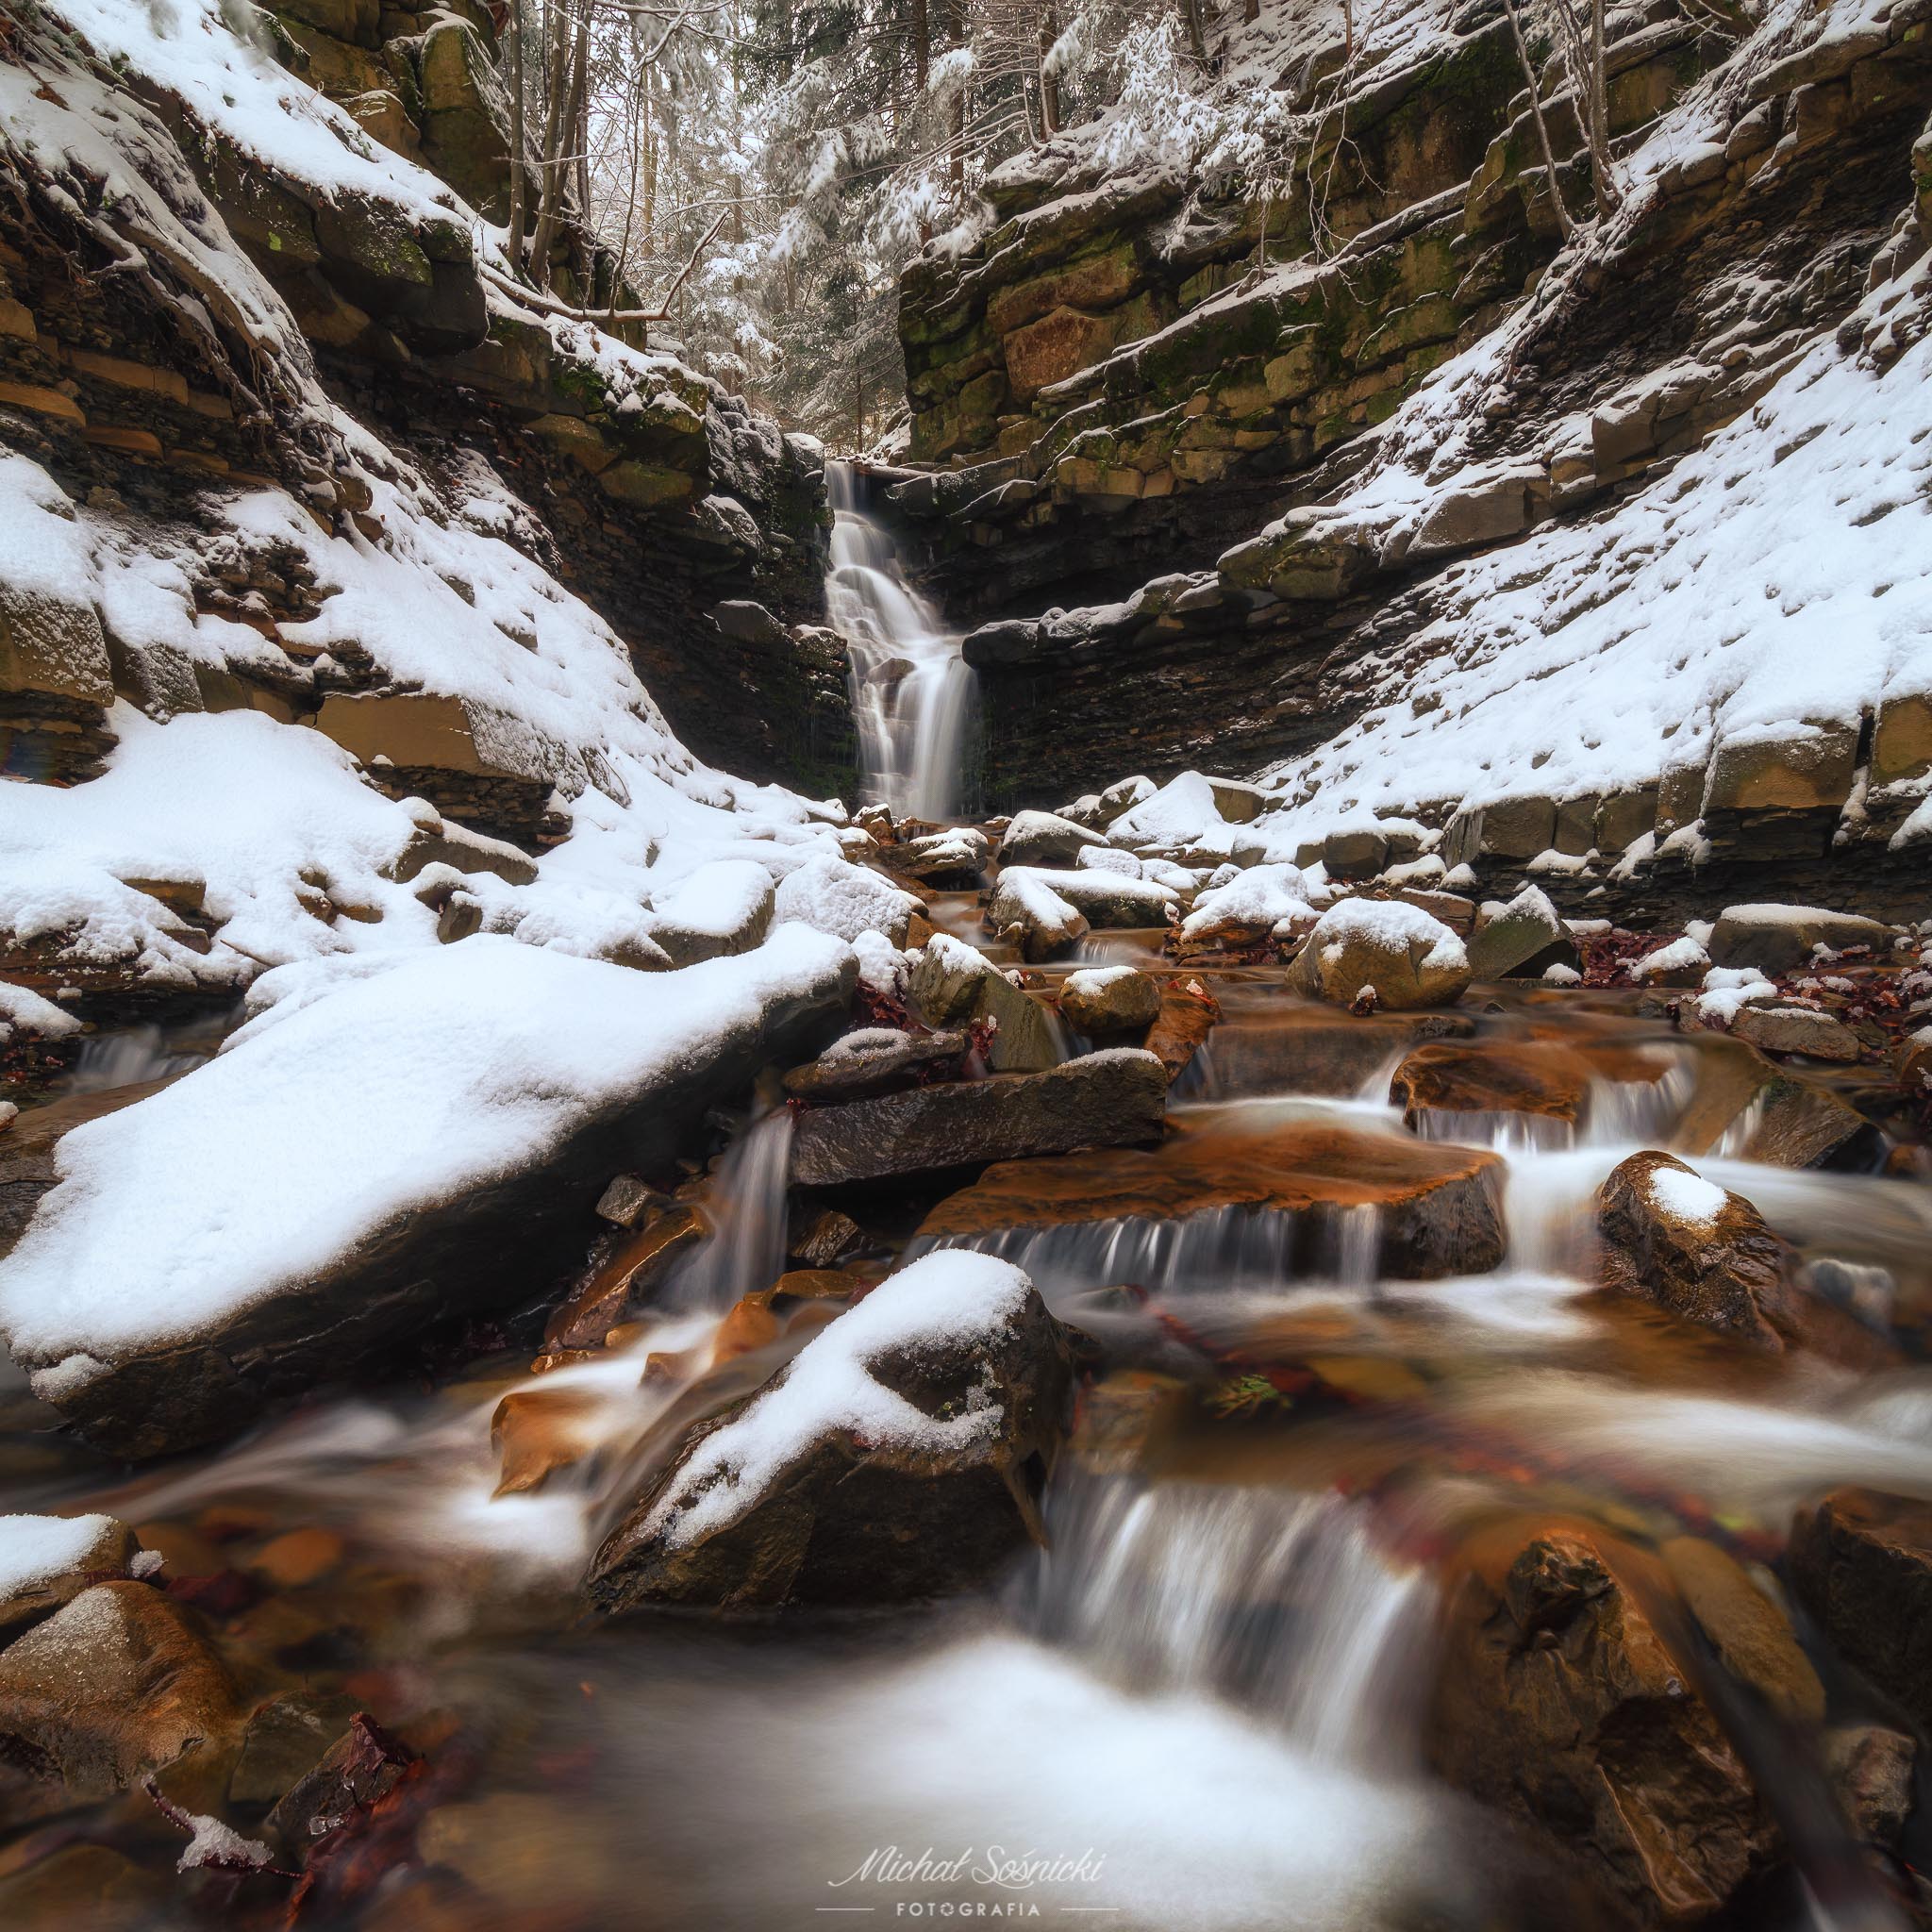 #poland #zawoja #river #snow #mountains #waterfall #rock #snow #majestic #nature #amazing, Michał Sośnicki